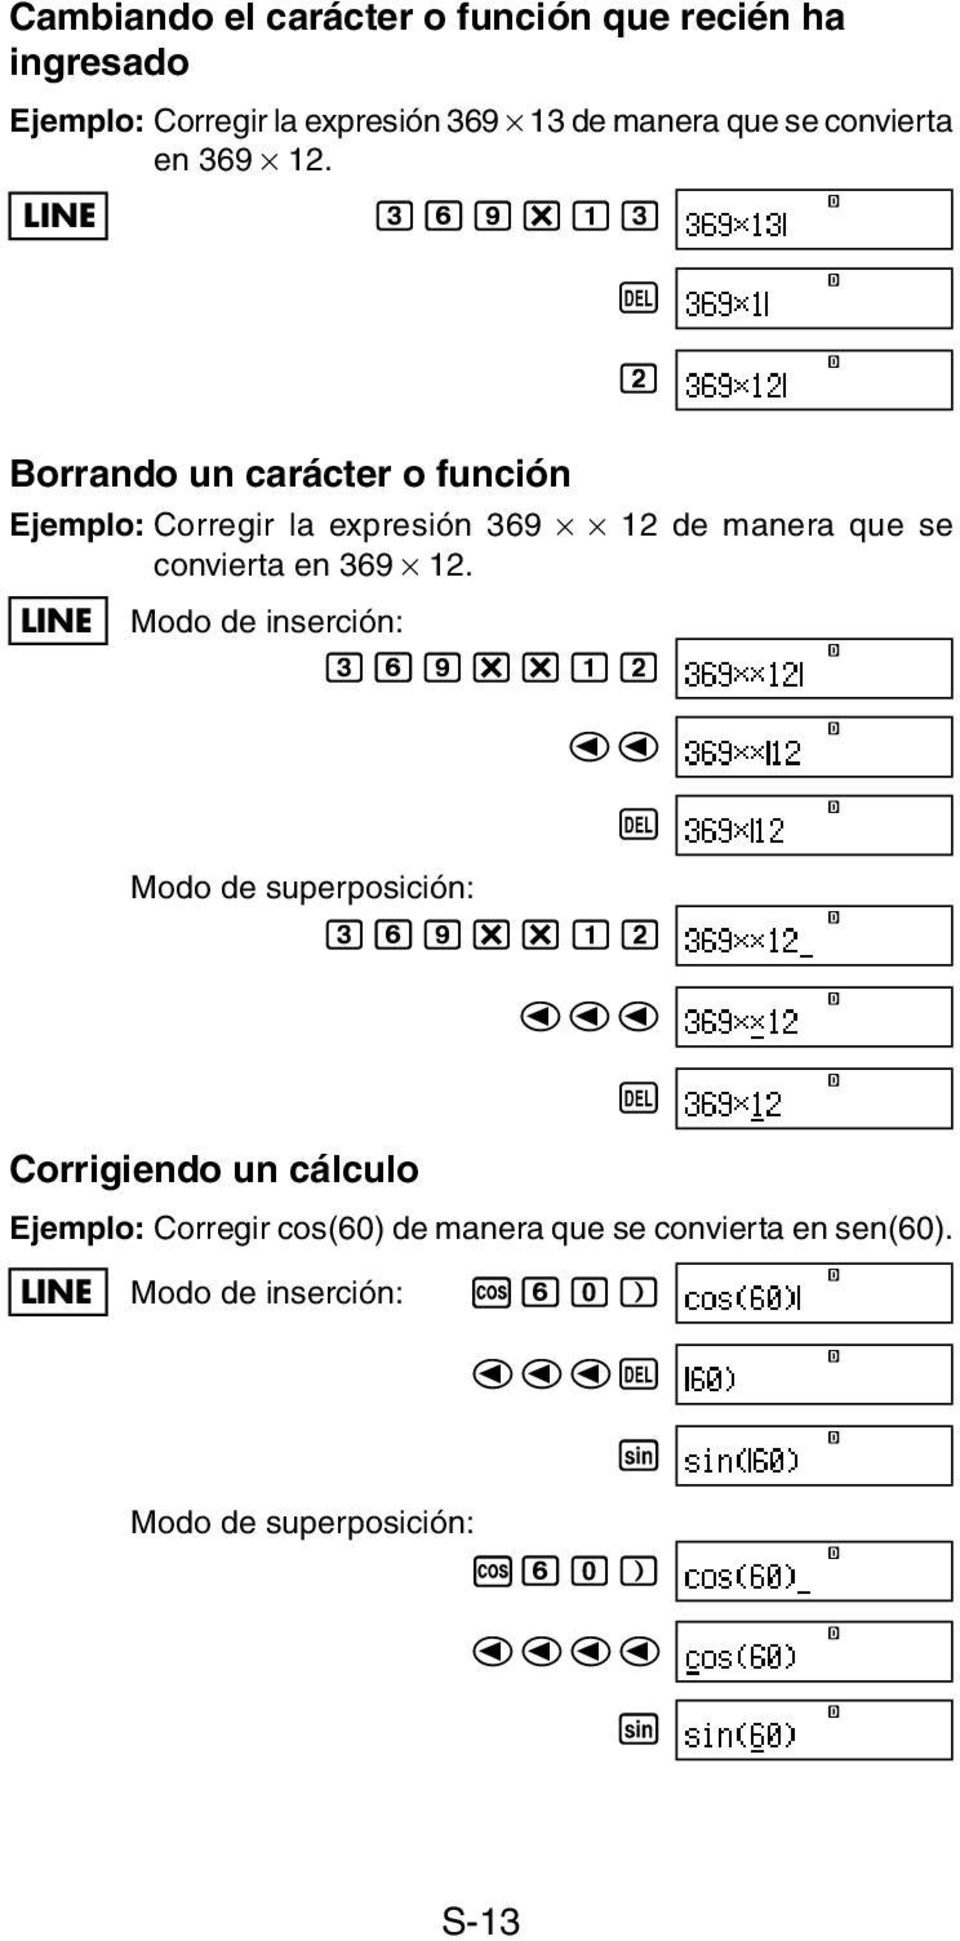 LINE 369*13 Y 2 Borrando un carácter o función Ejemplo: Corregir la expresión 369 12 de manera que se convierta  LINE Modo